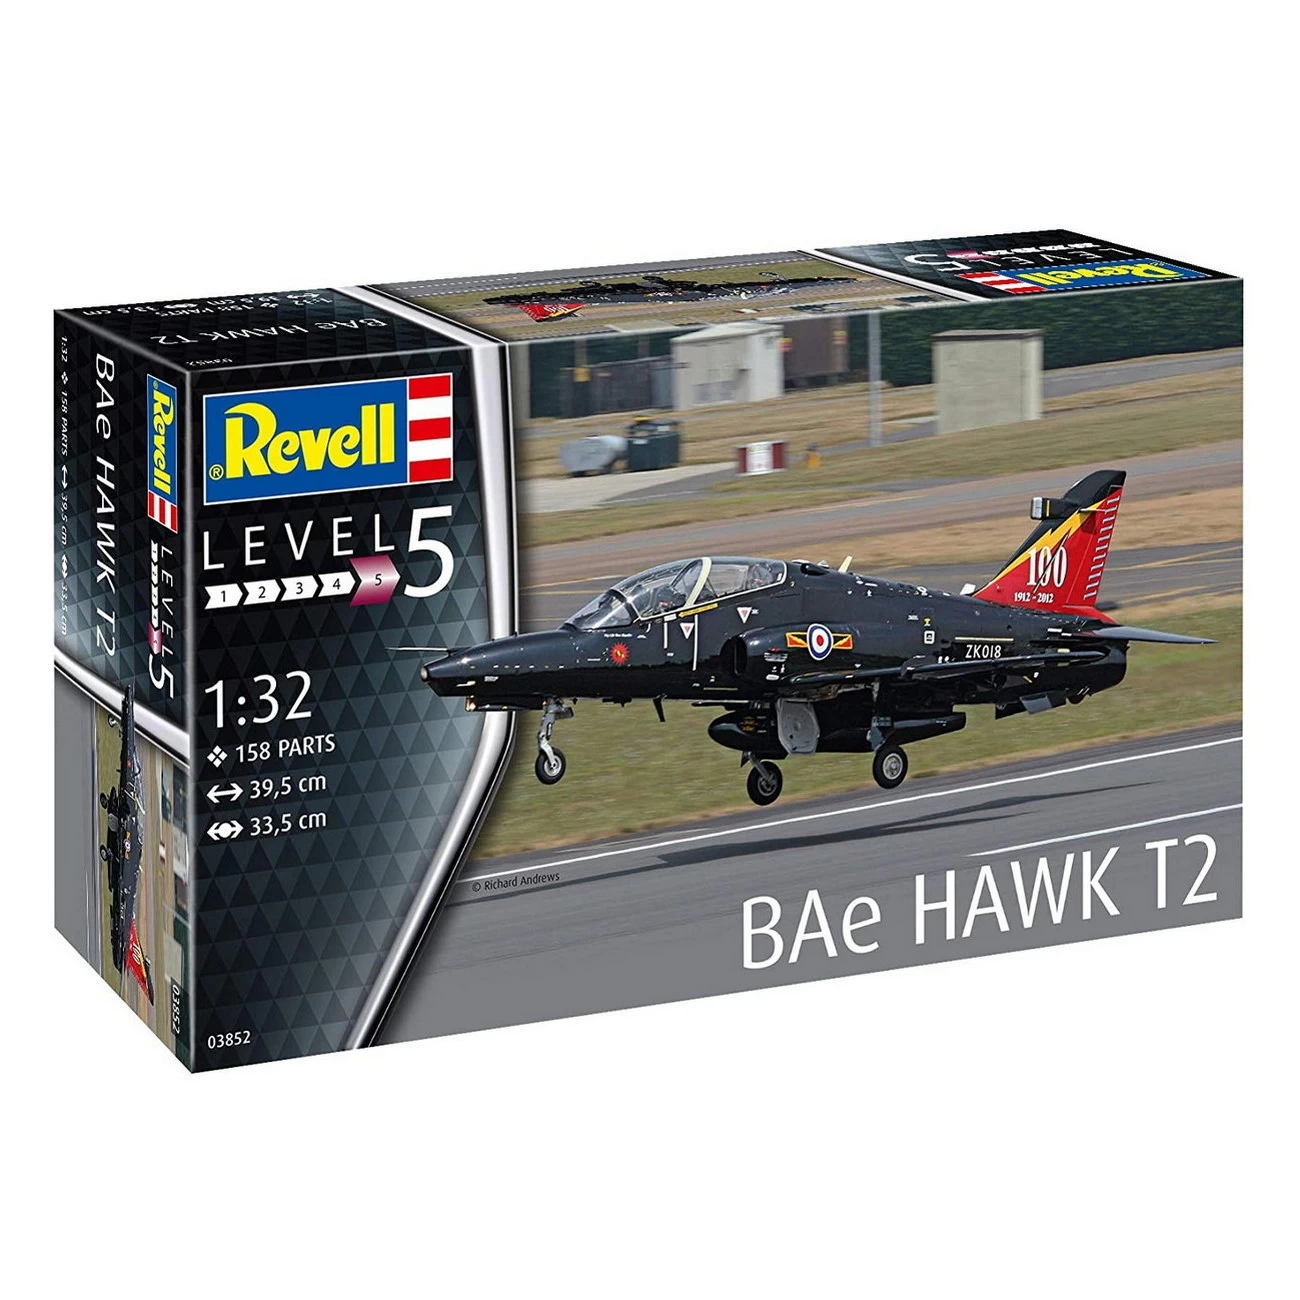 Bae Hawk T2 (03852)